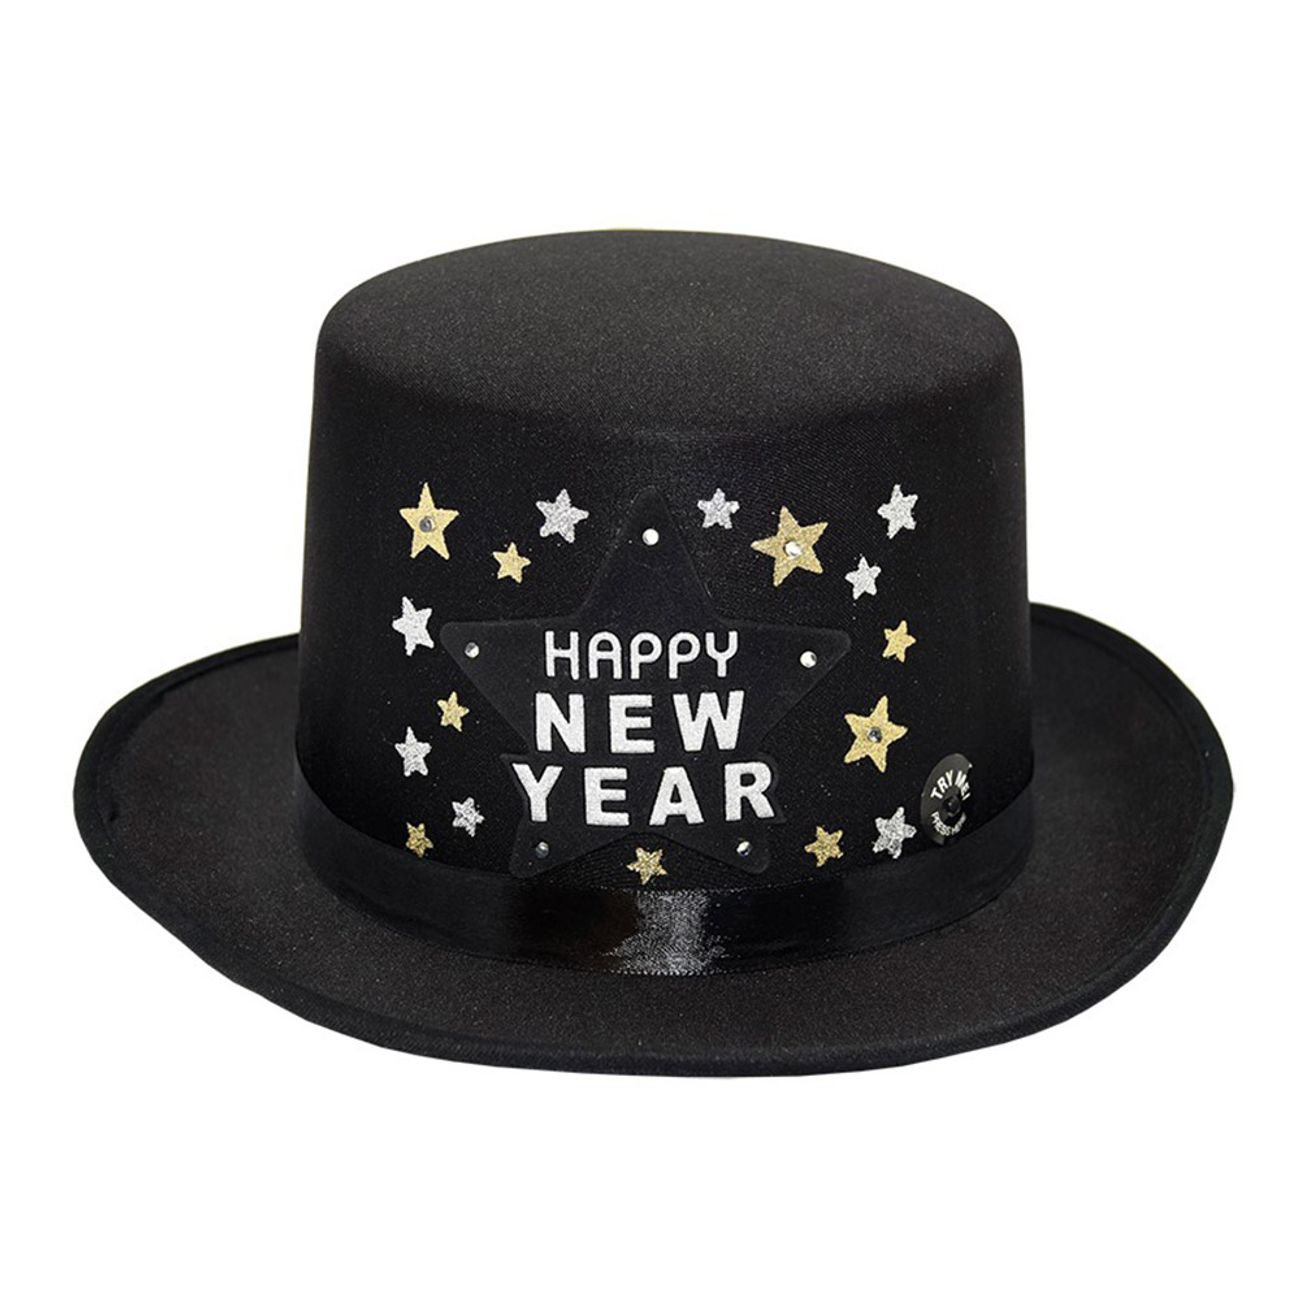 hatt-happy-new-year-svart-1